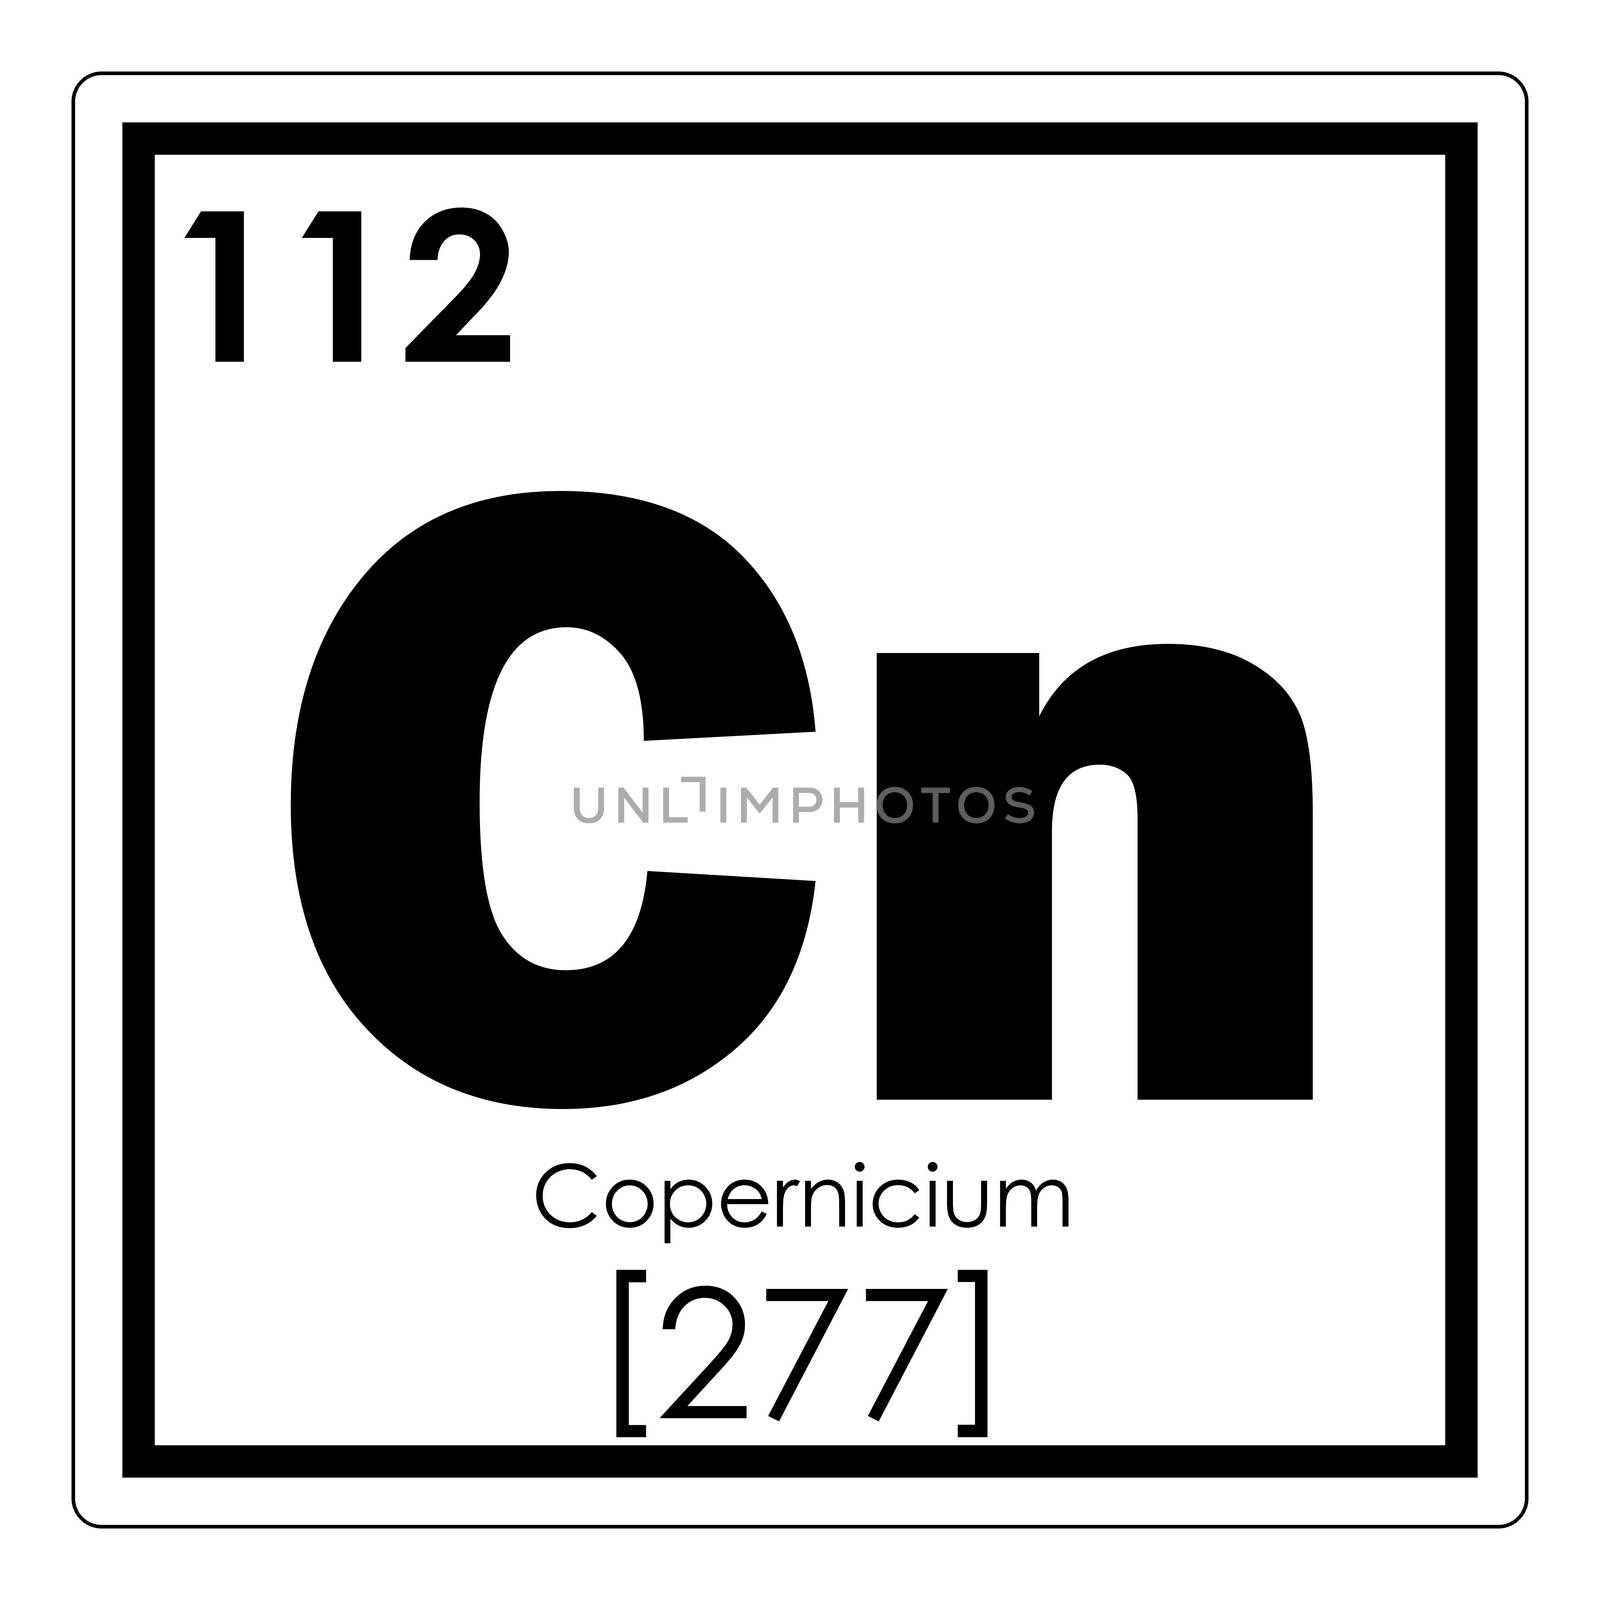 Copernicium chemical element periodic table science symbol